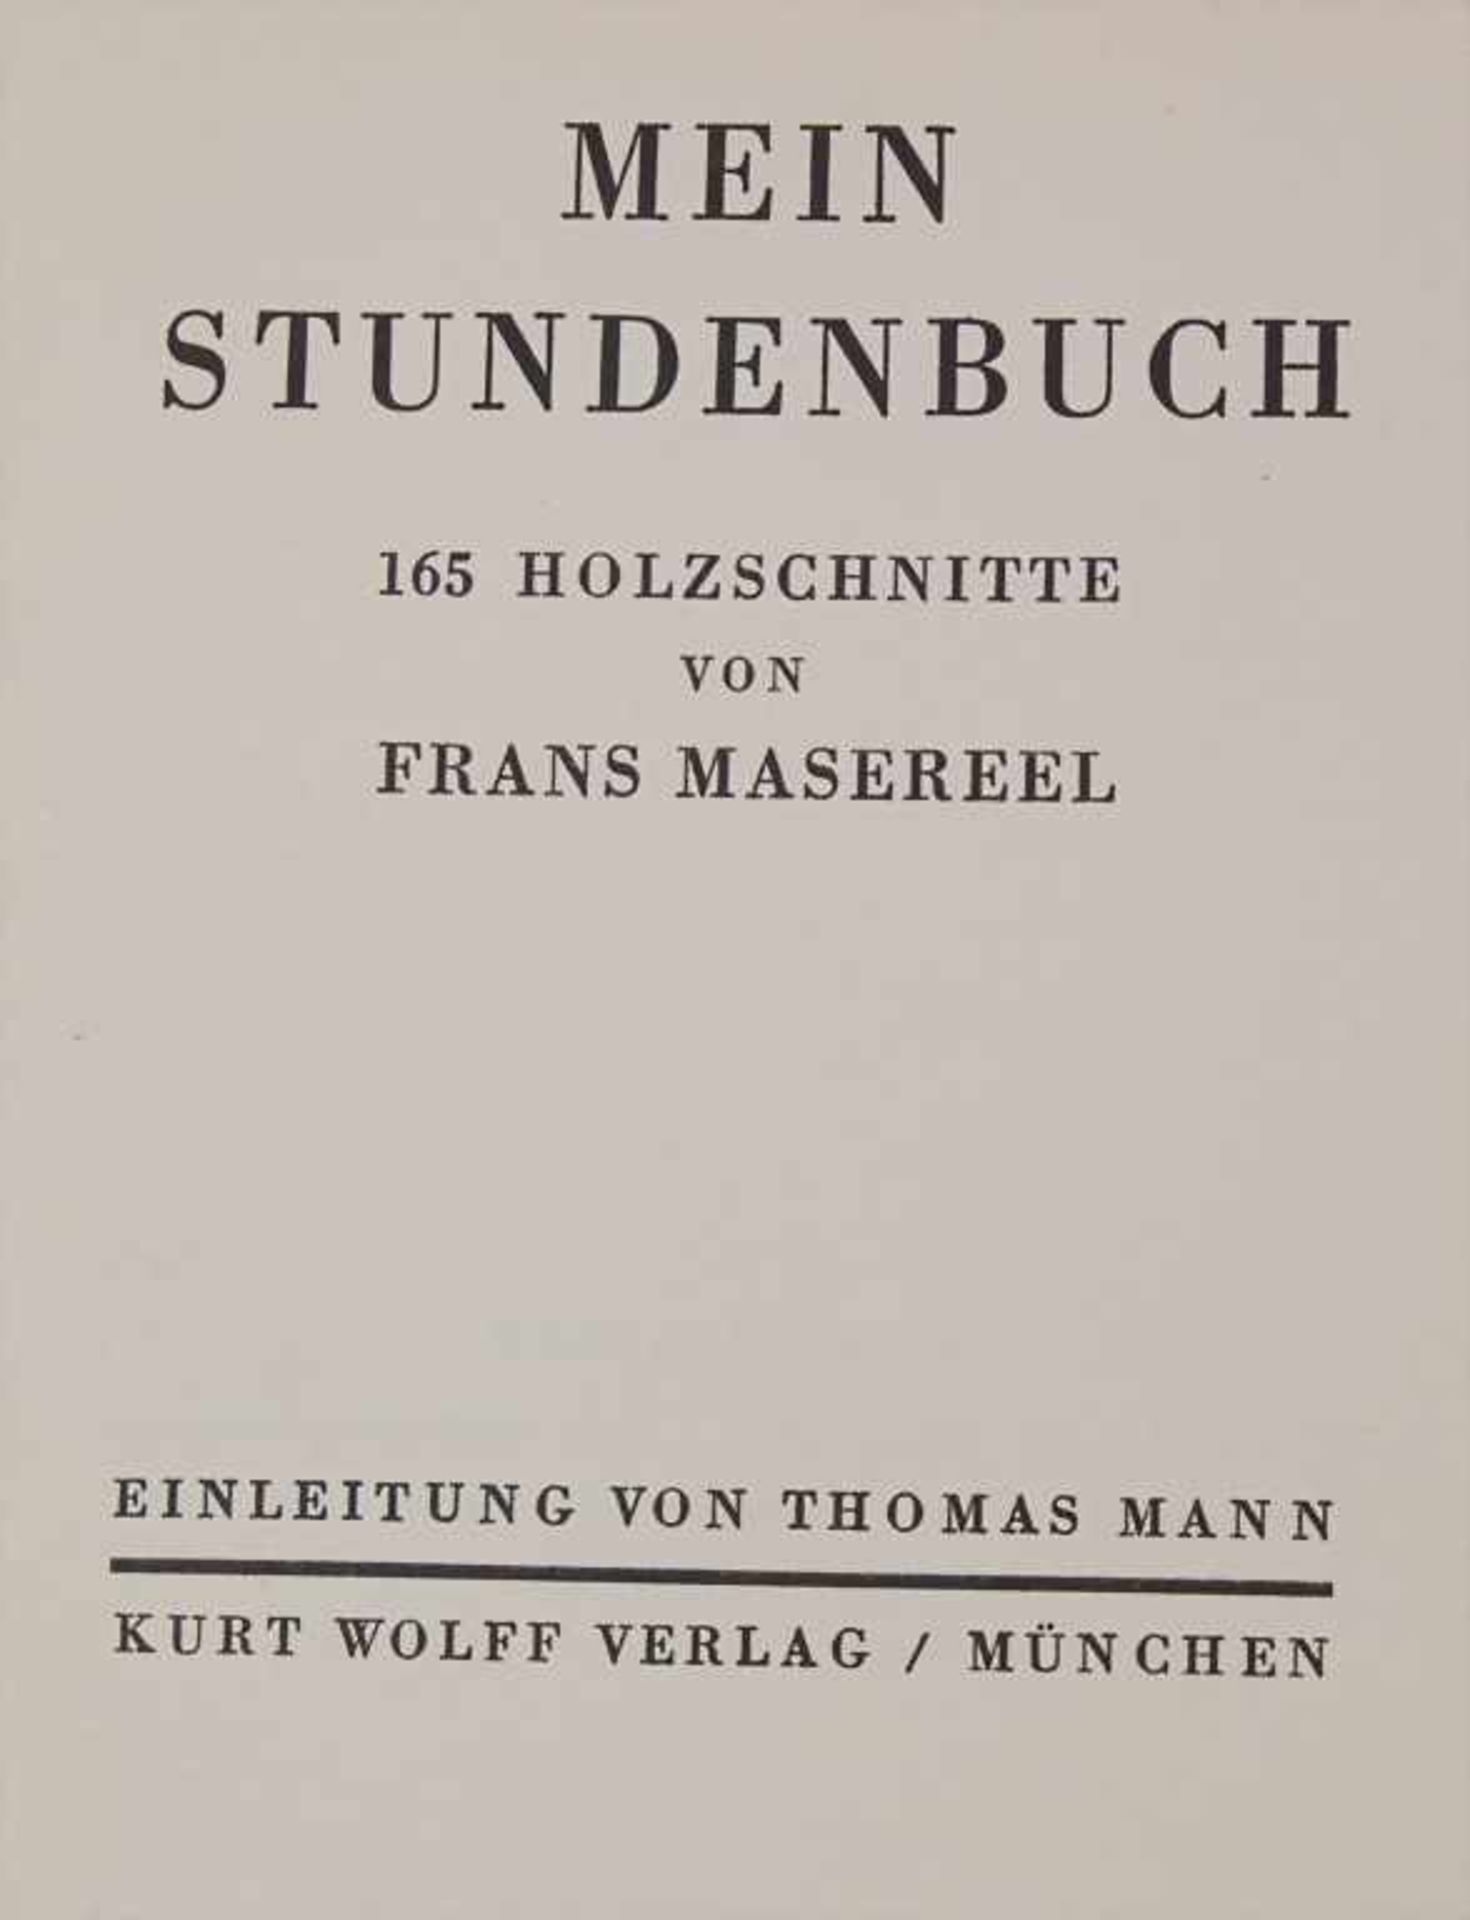 Frans Masereel (1889-1972), 'Mein Stundenbuch: 165 Holzschnitte'Mit einer Einleitung von Thomas - Image 2 of 3